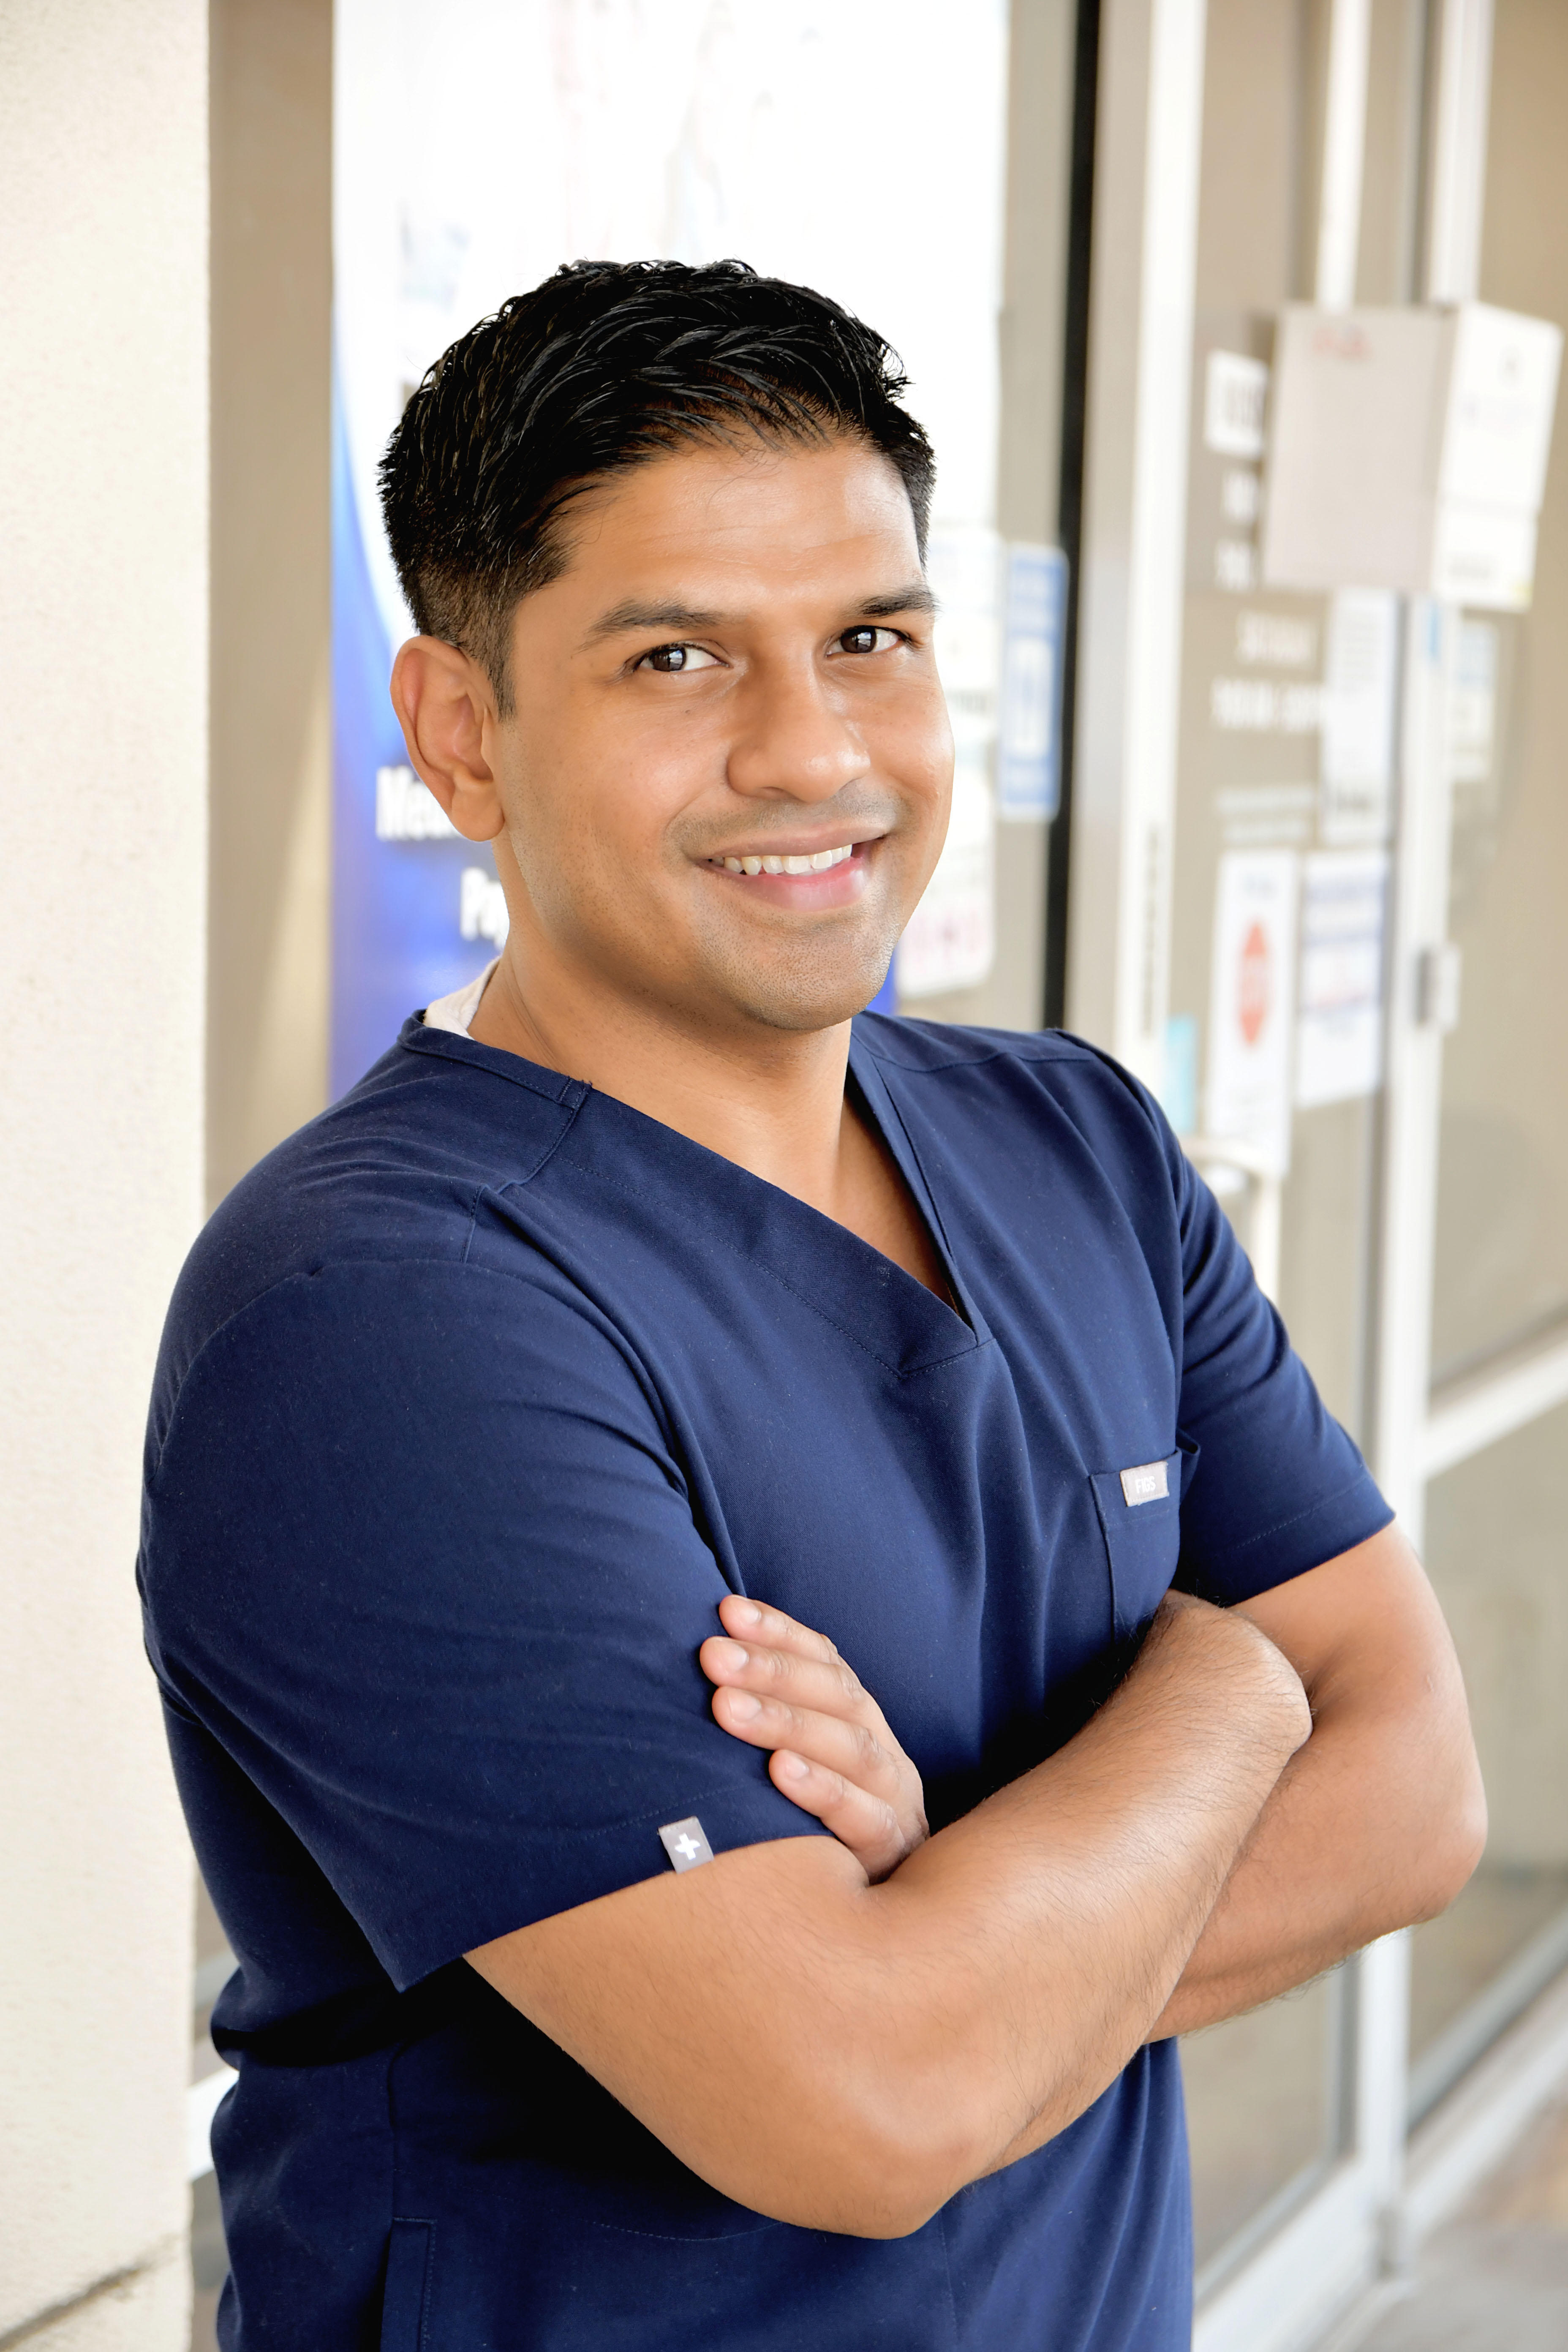 San Antonio dentist Dr. Mustafa Iqbal